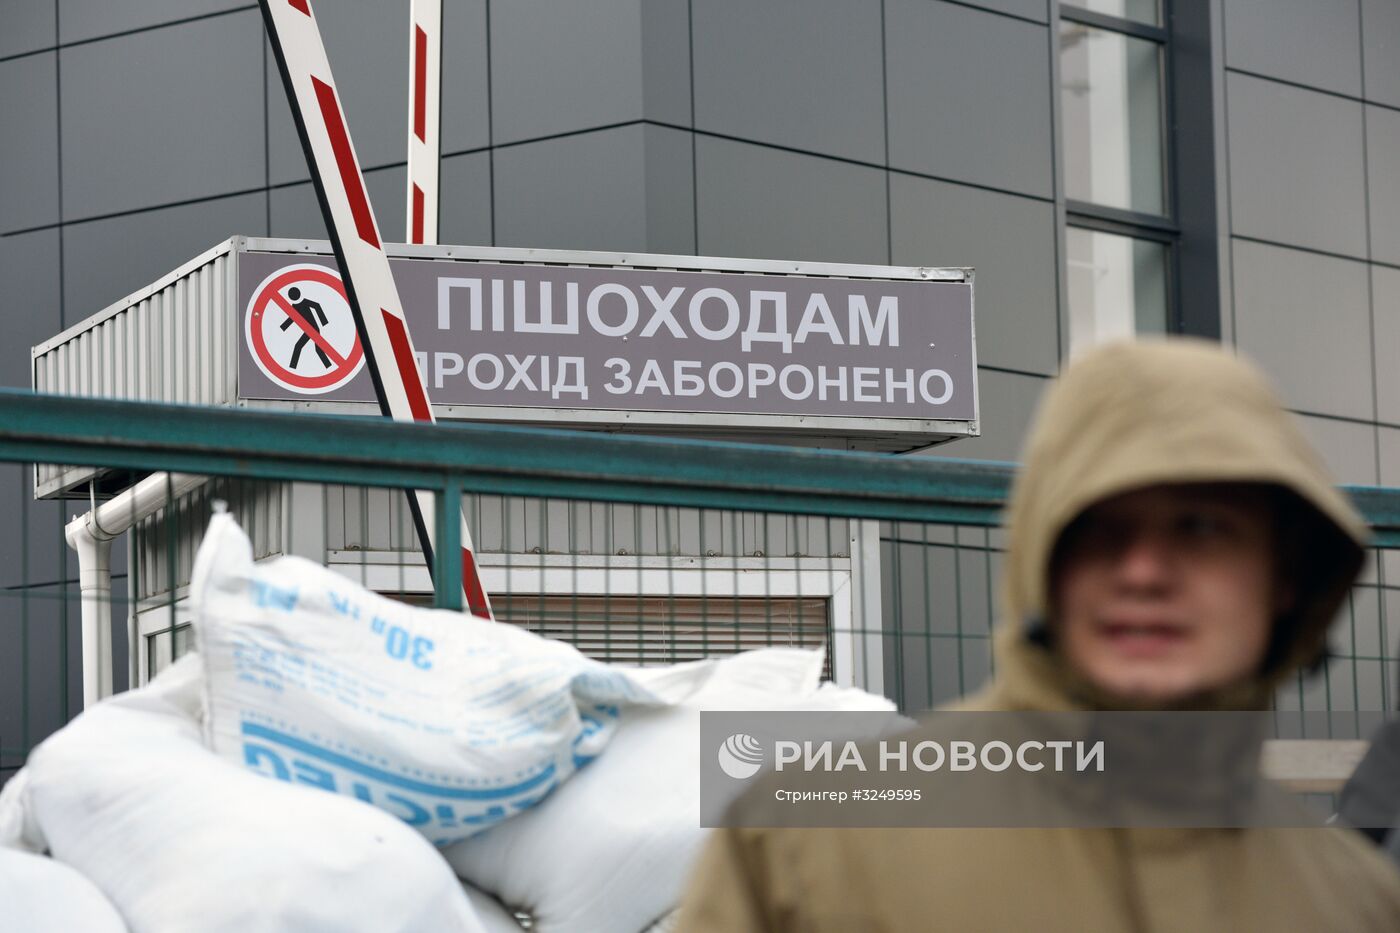 Радикалы заблокировали здание телеканала NewsOne в Киеве